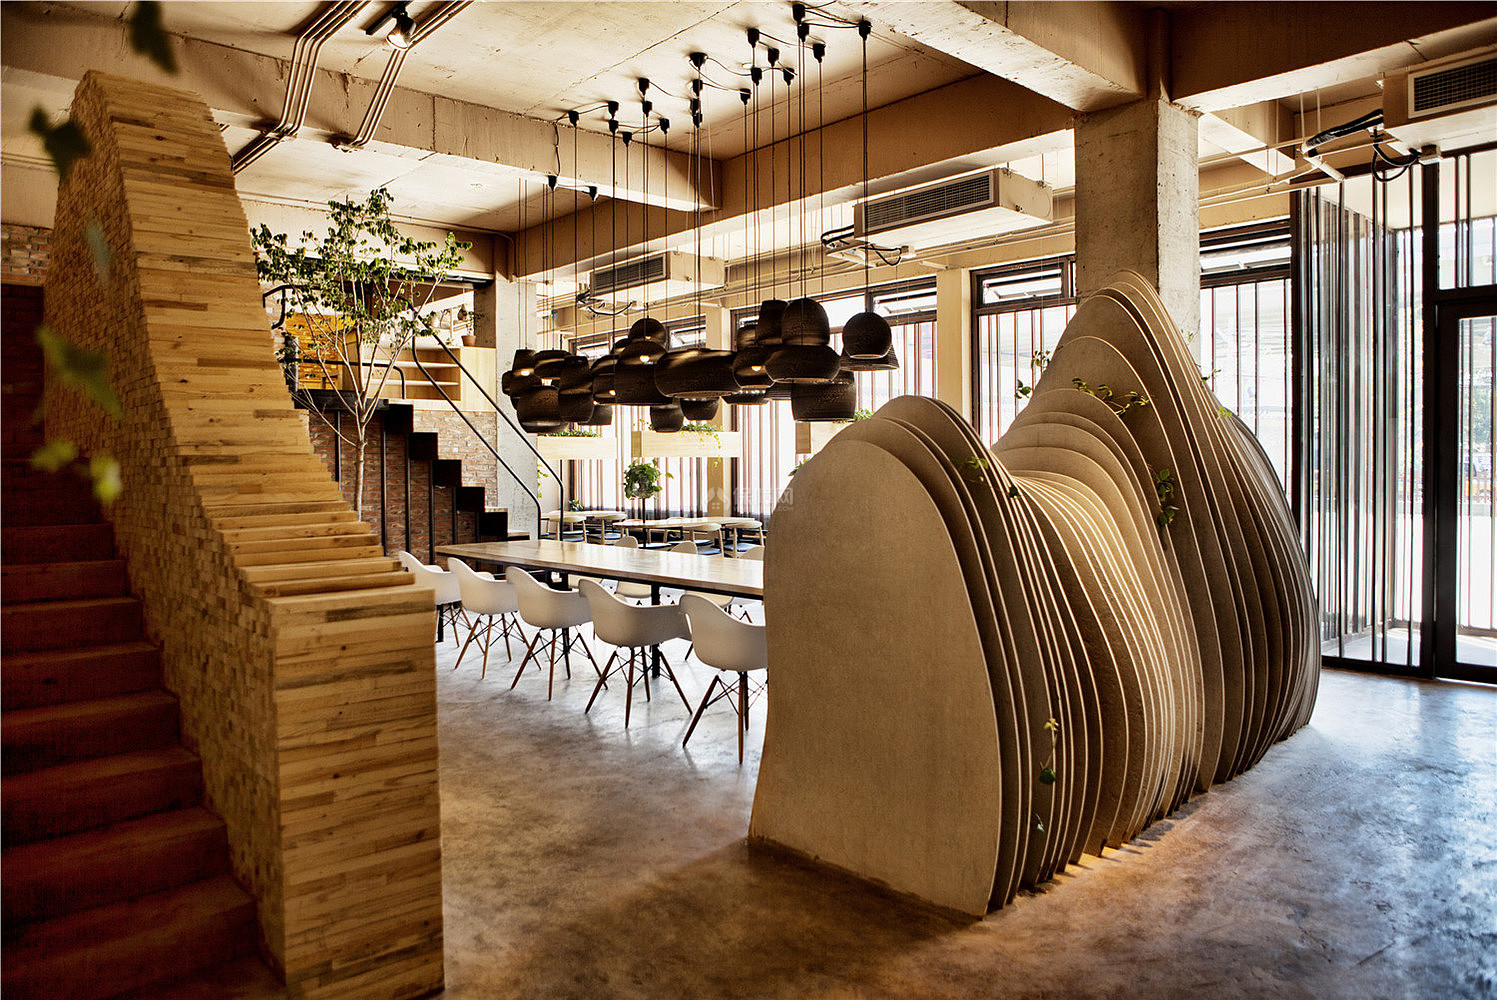 山咖啡馆之一楼装饰物设计摆放效果图